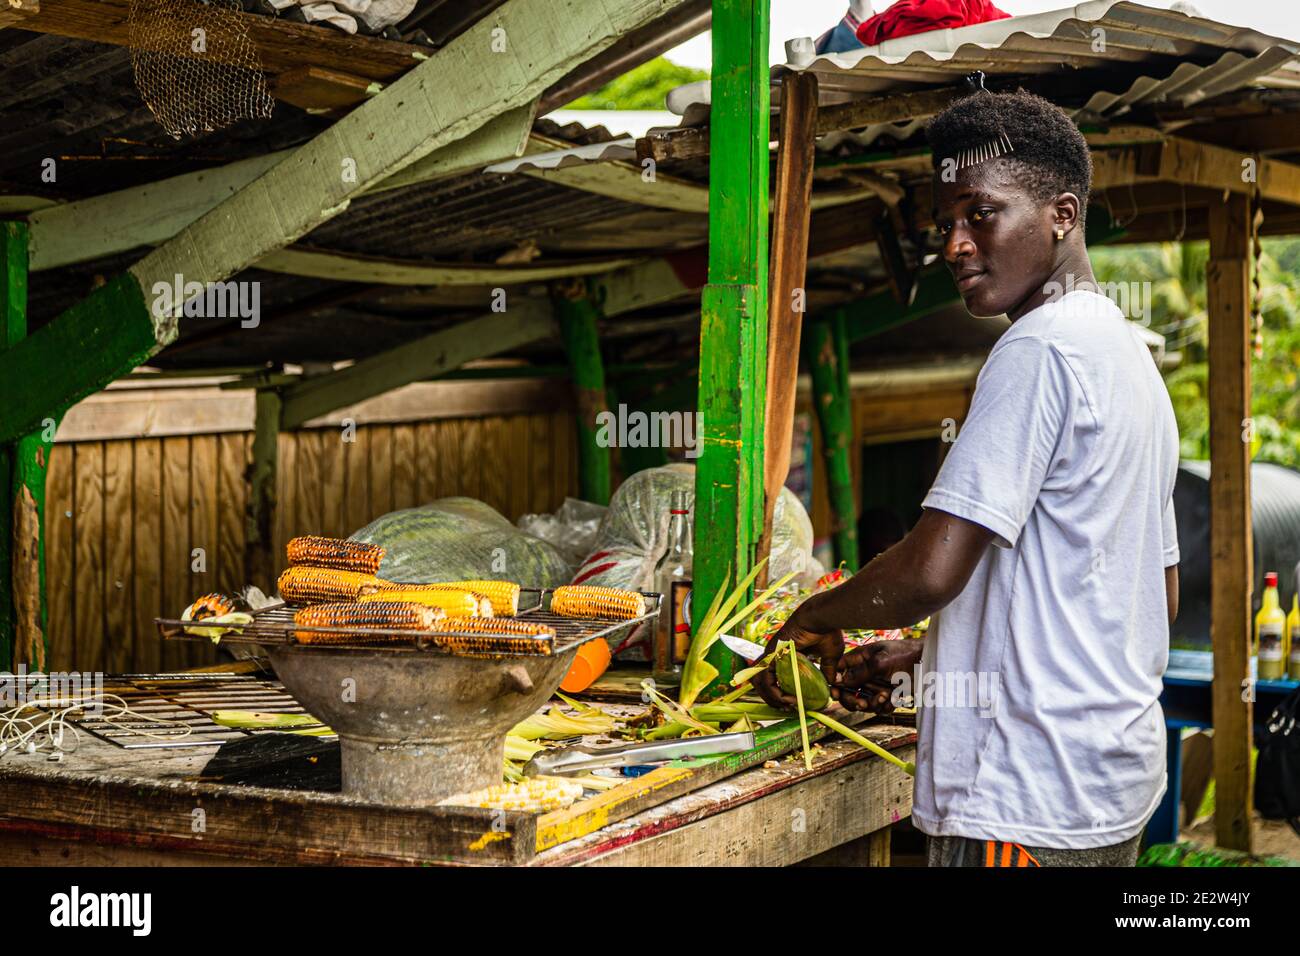 Roasted corn kiosk in Morne Fendue, Grenada Stock Photo